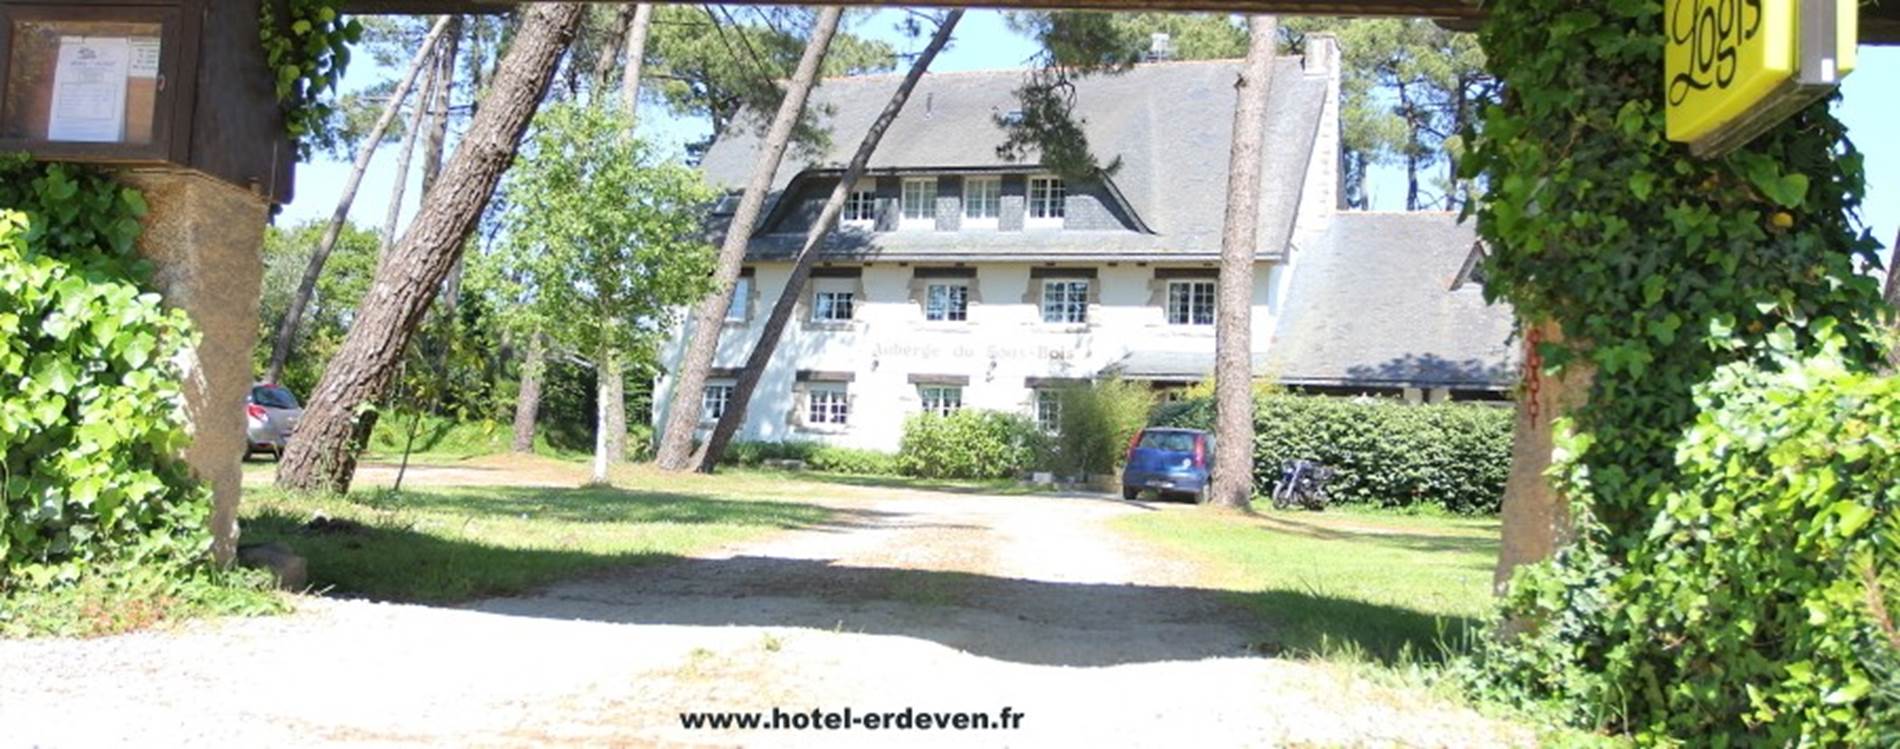 Hotel-Les-Pins-Erdeven-Morbihan-Bretagne-Sud © Hotel-Les-Pins-Erdeven